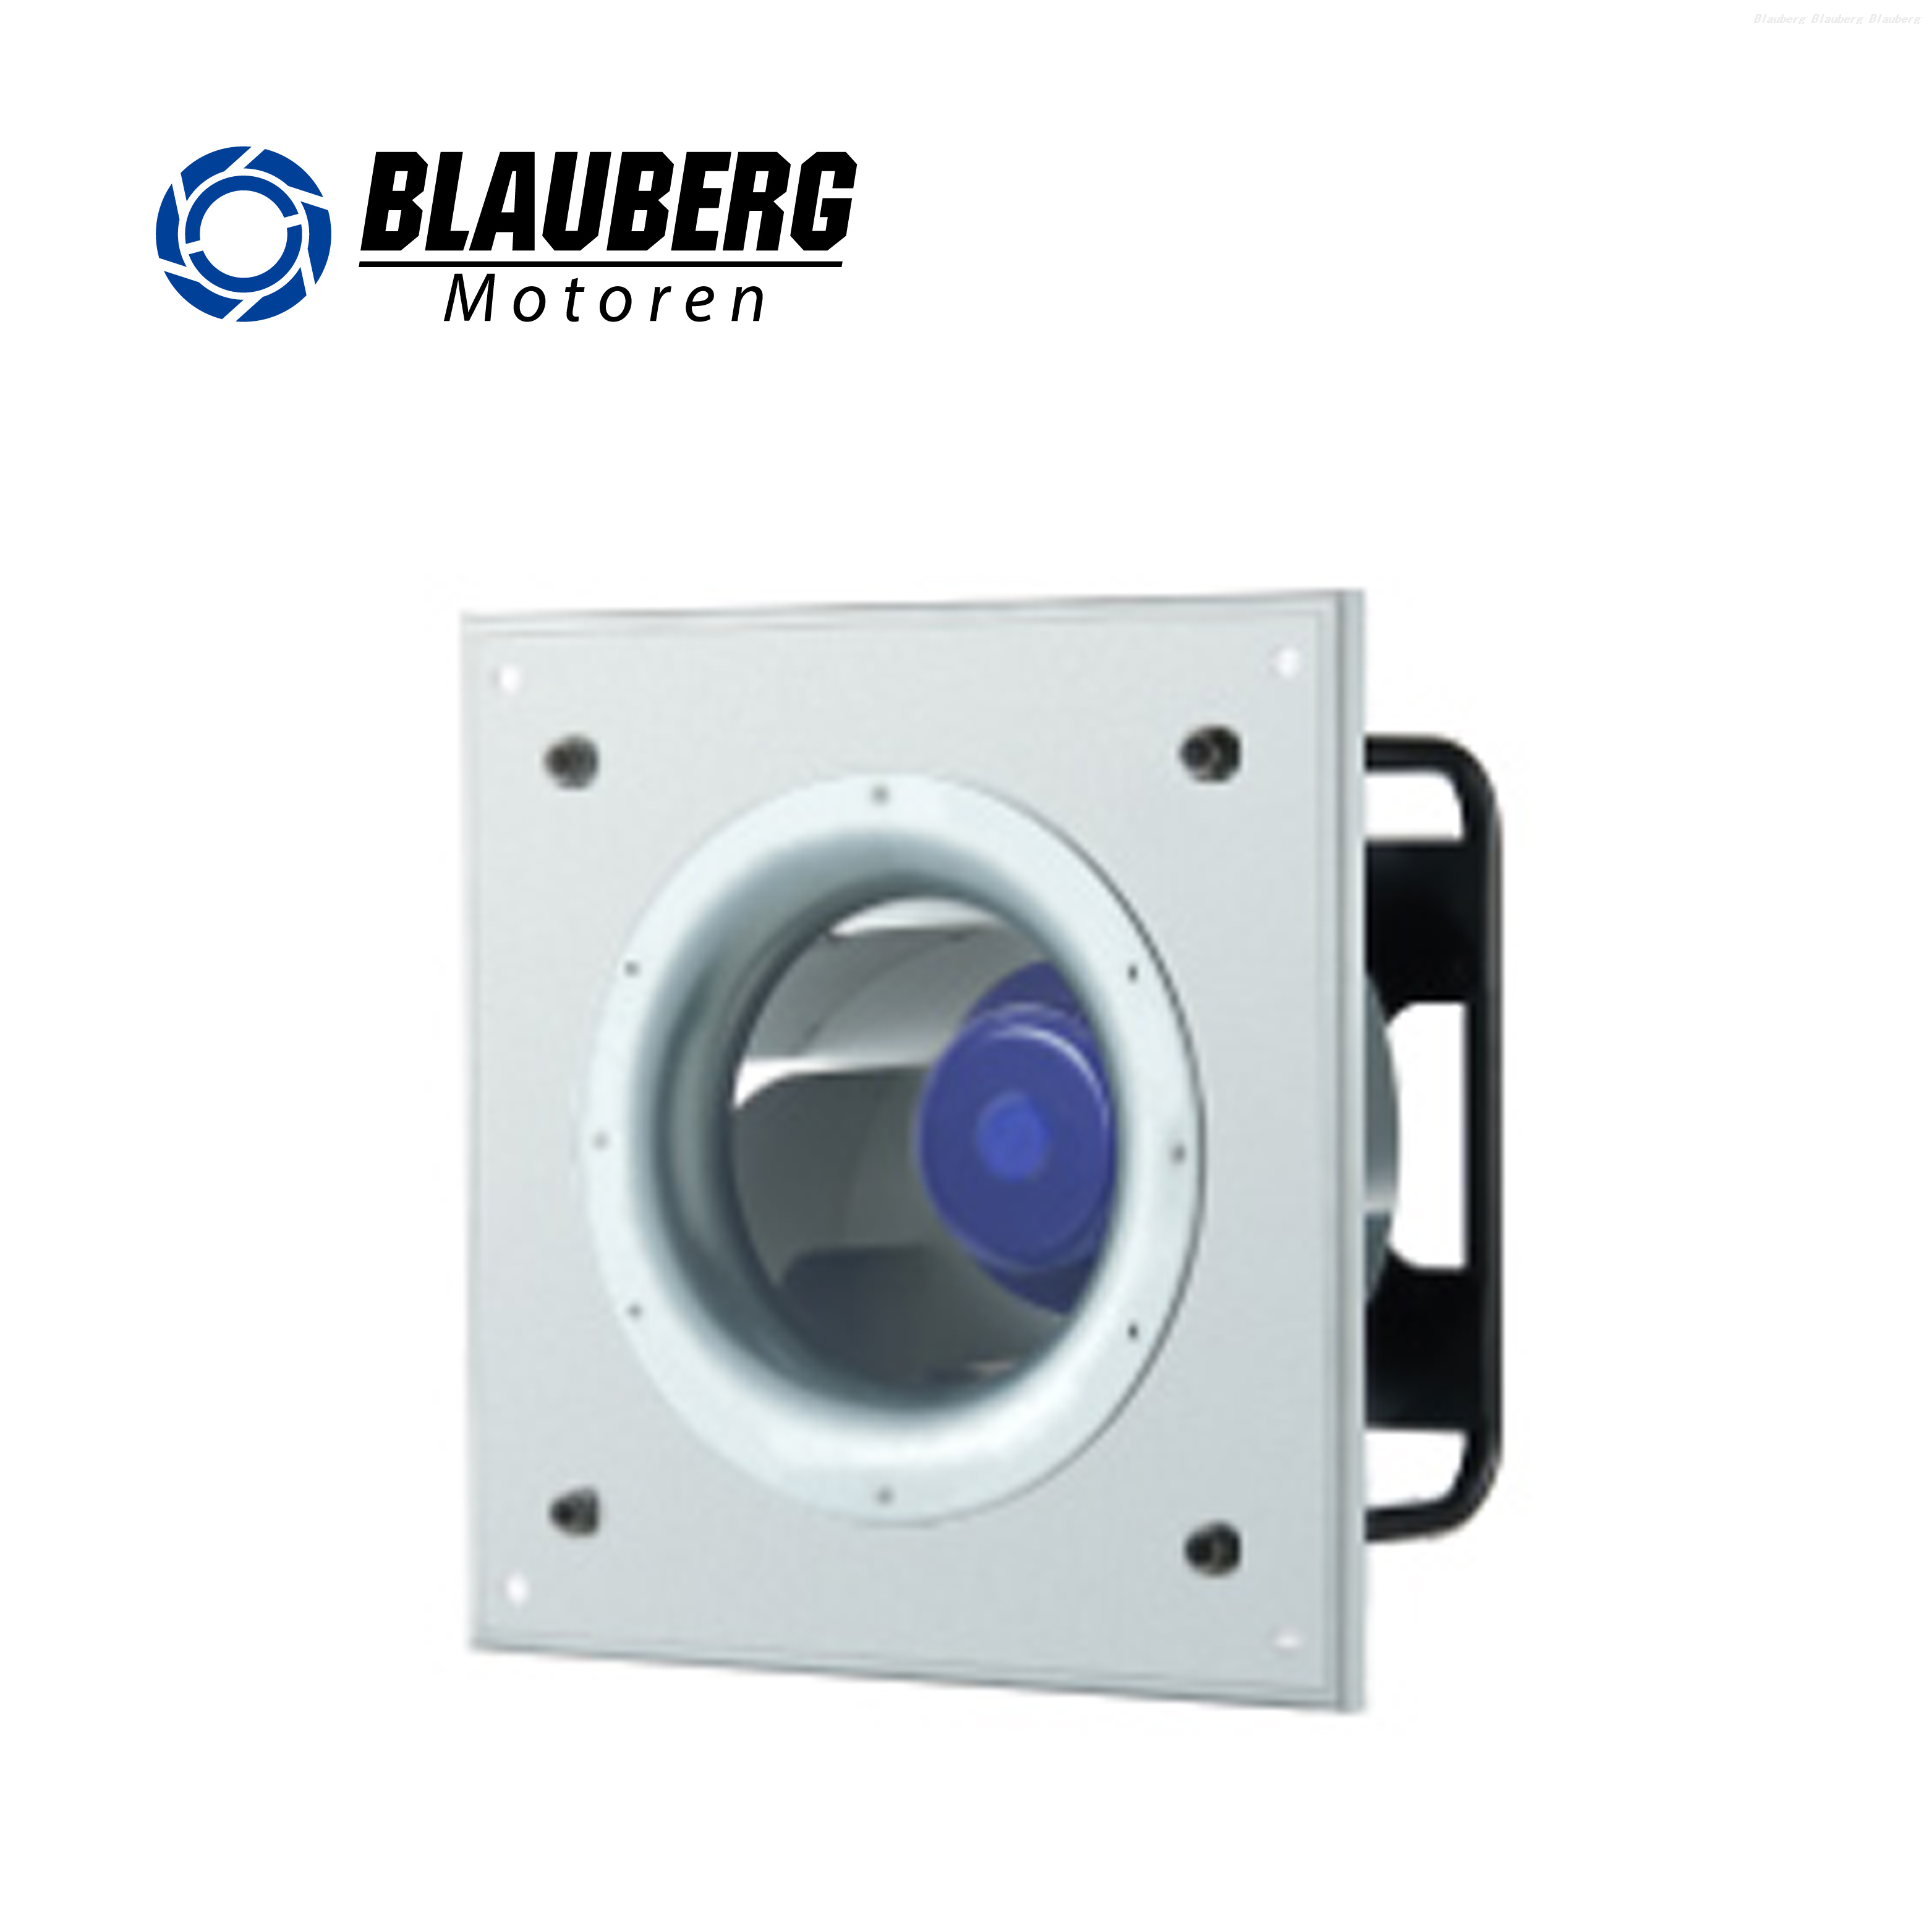 Blauberg Industrial Factory Plastic 280mm plug centrifugal fan FFU Fan air conditioner blower